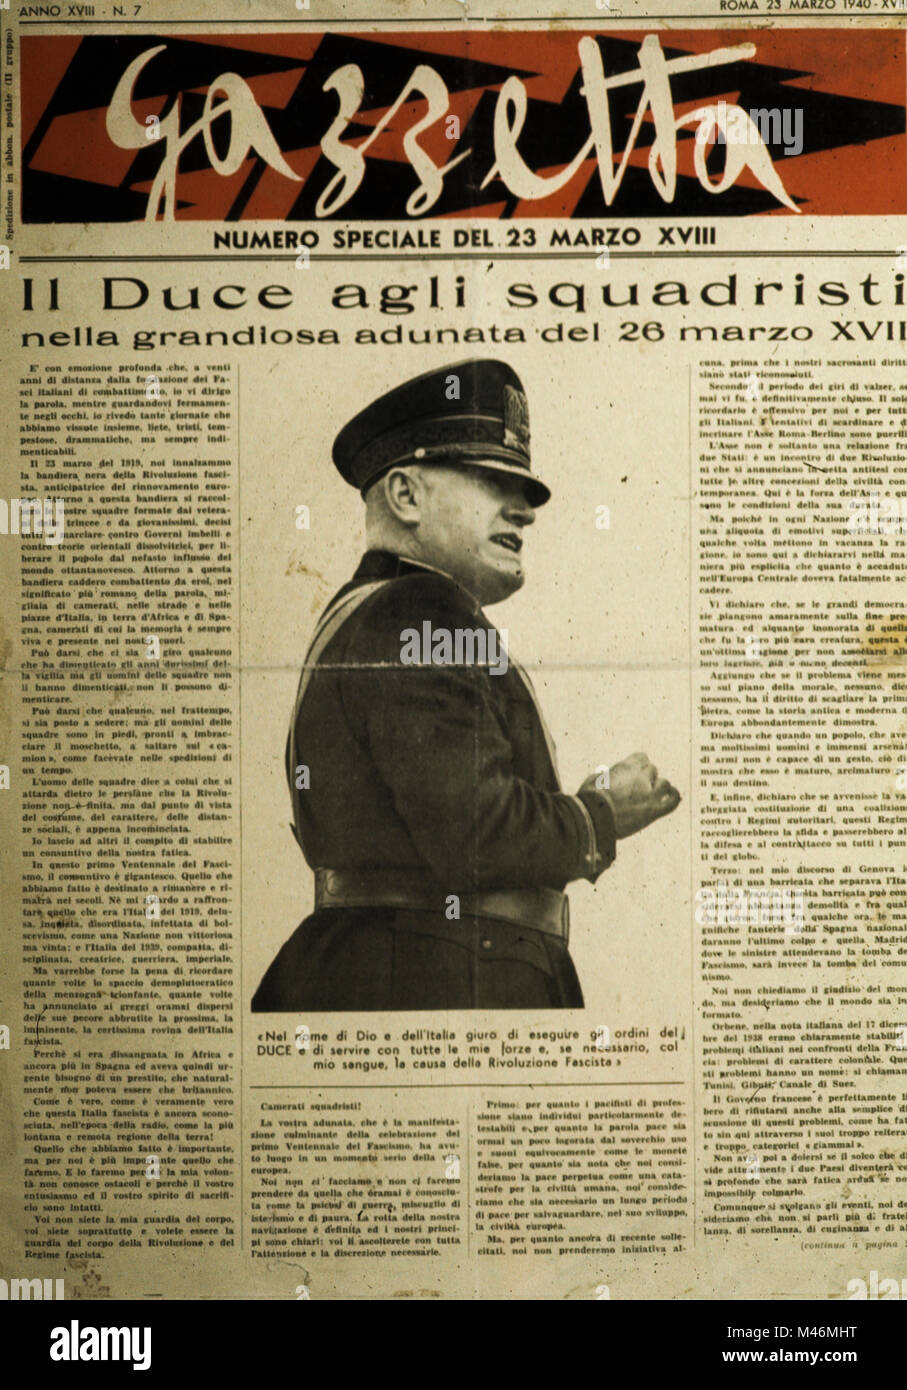 Gazzetta, discorso del duce al squadristi, 1940 Foto Stock